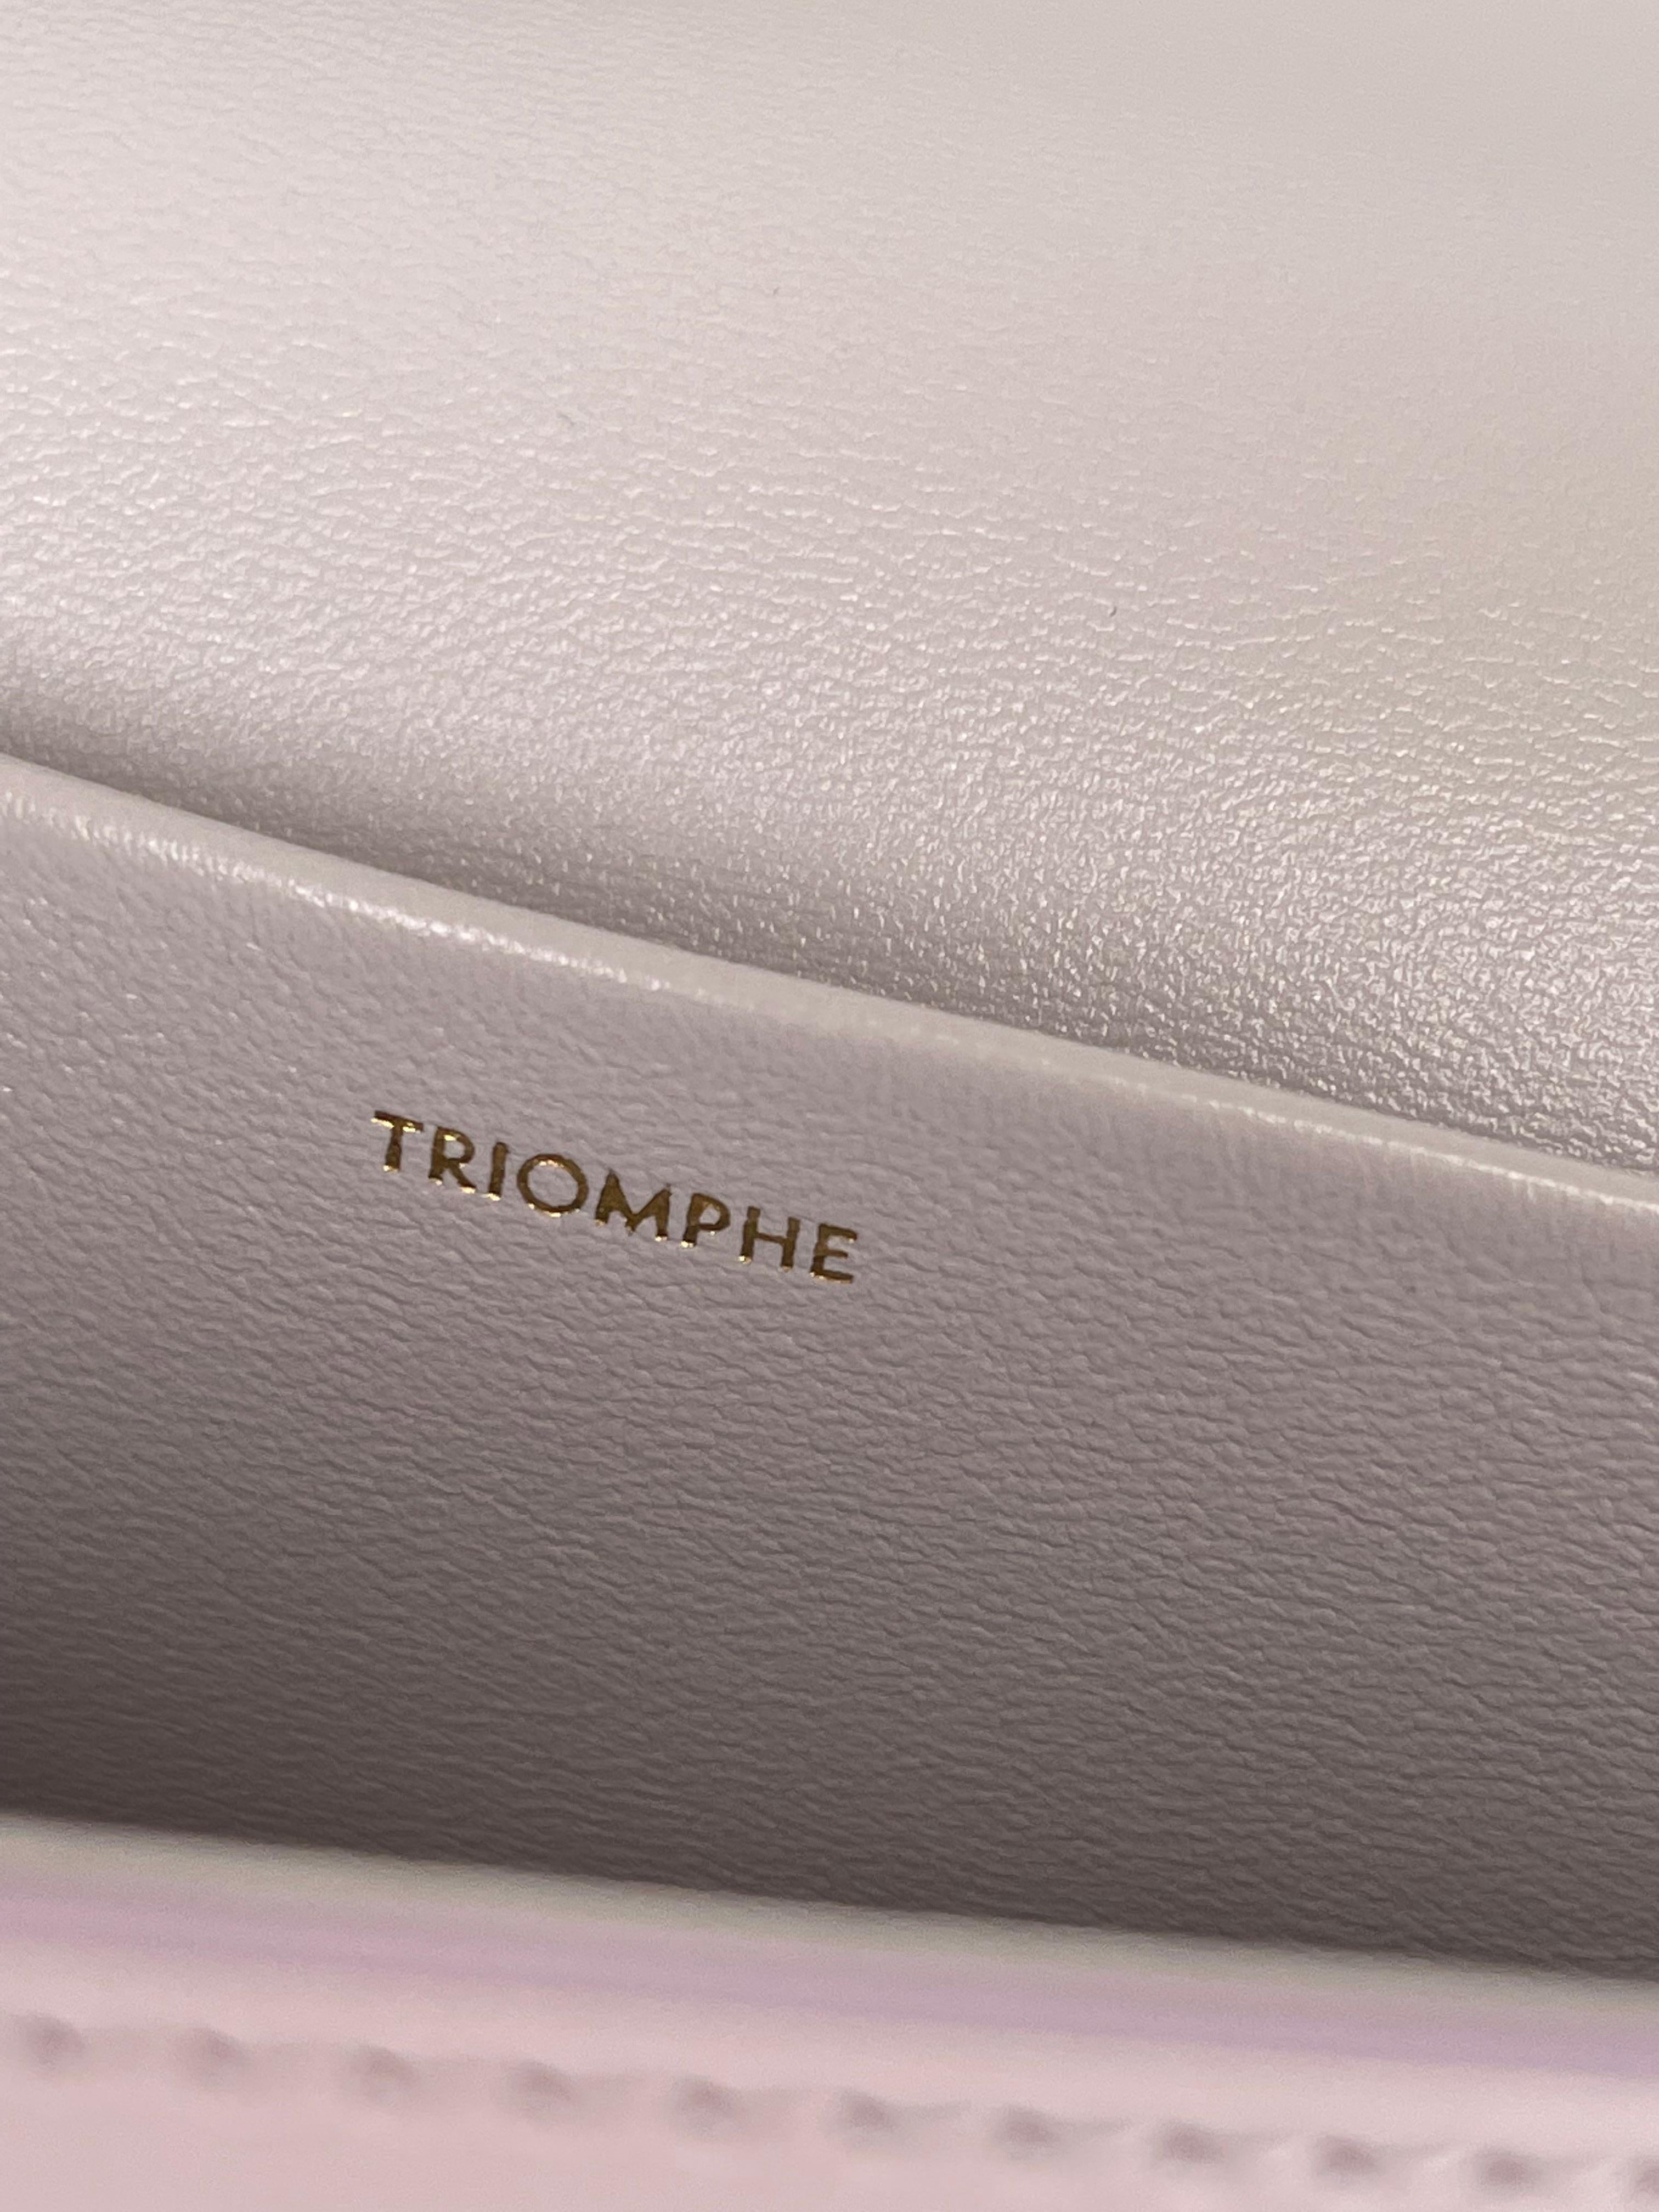  Celine Triomphe Shoulder Bag in Shiny Calfskin Lavender Grey Should Bag Pour femmes 